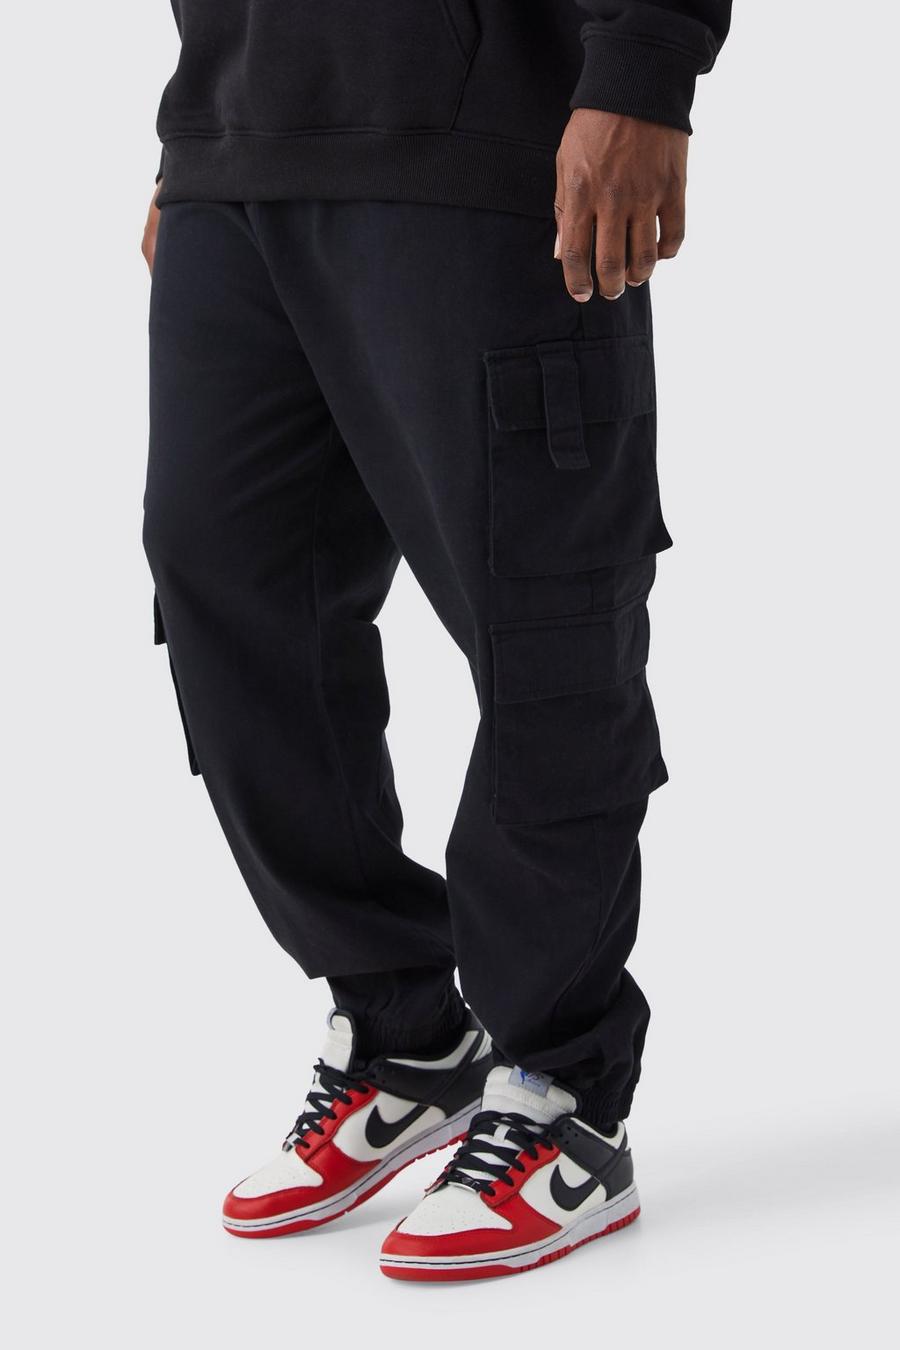 Pantalón deportivo Plus ajustado con cintura elástica y bolsillos cargo, Black